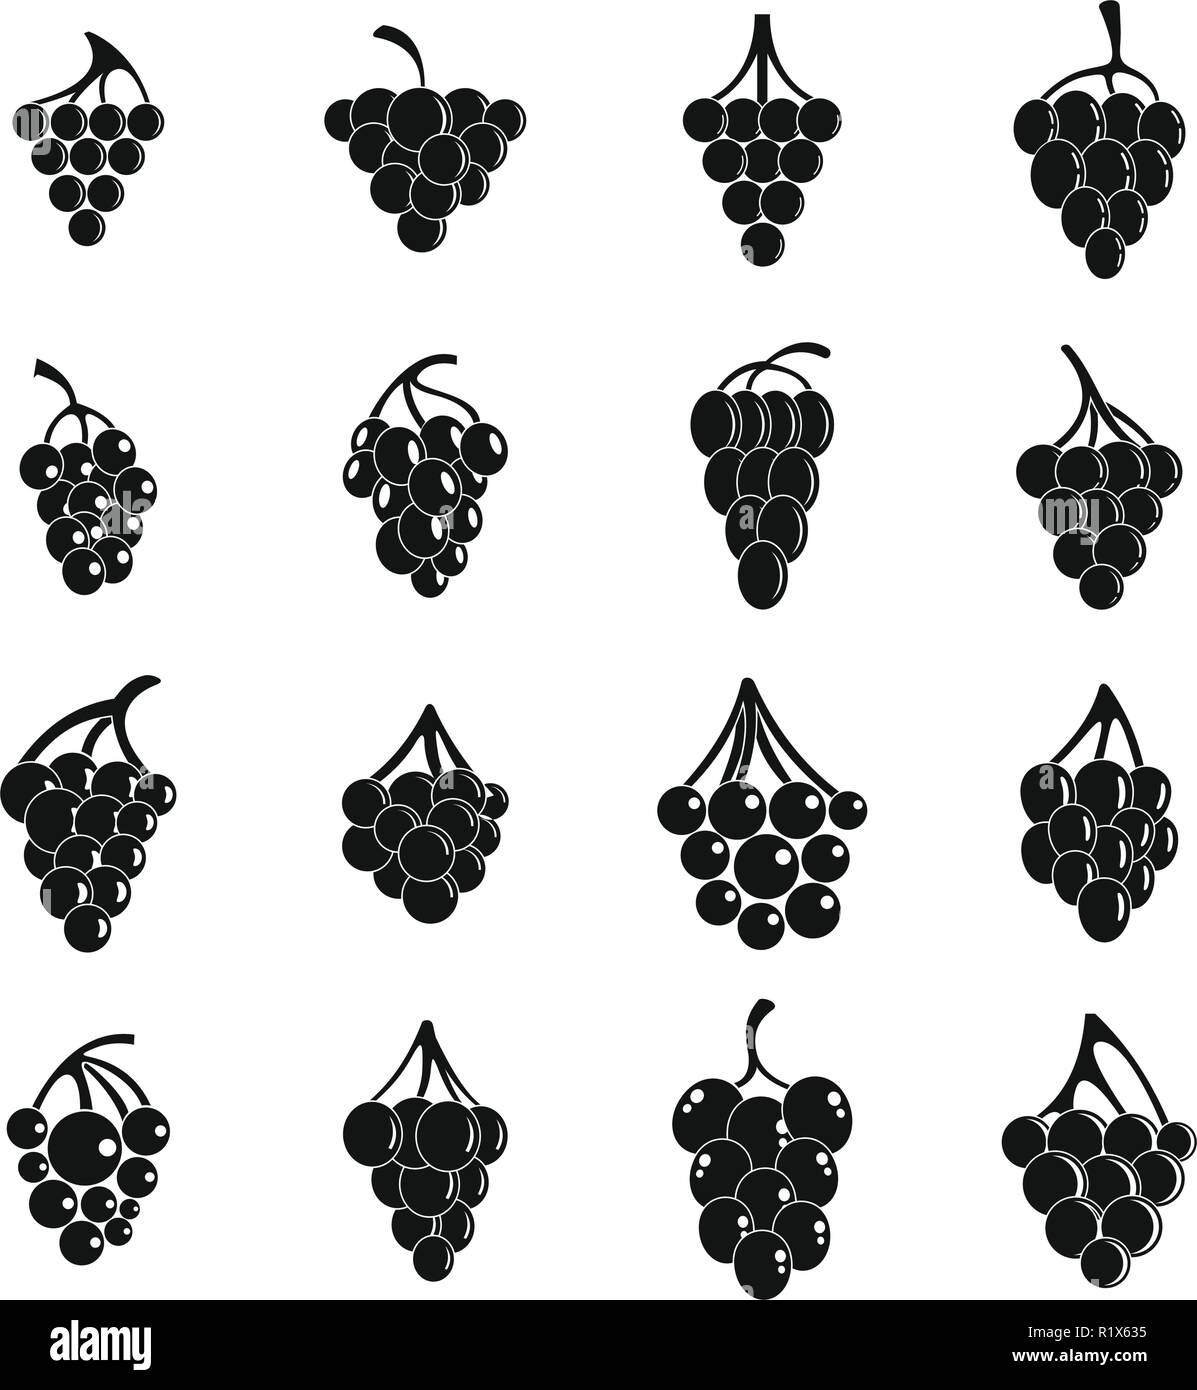 Vino di uve mazzetto di set di icone. Semplice illustrazione di 16 vini di uva grappolo alcool logo icone vettoriali per il web Illustrazione Vettoriale